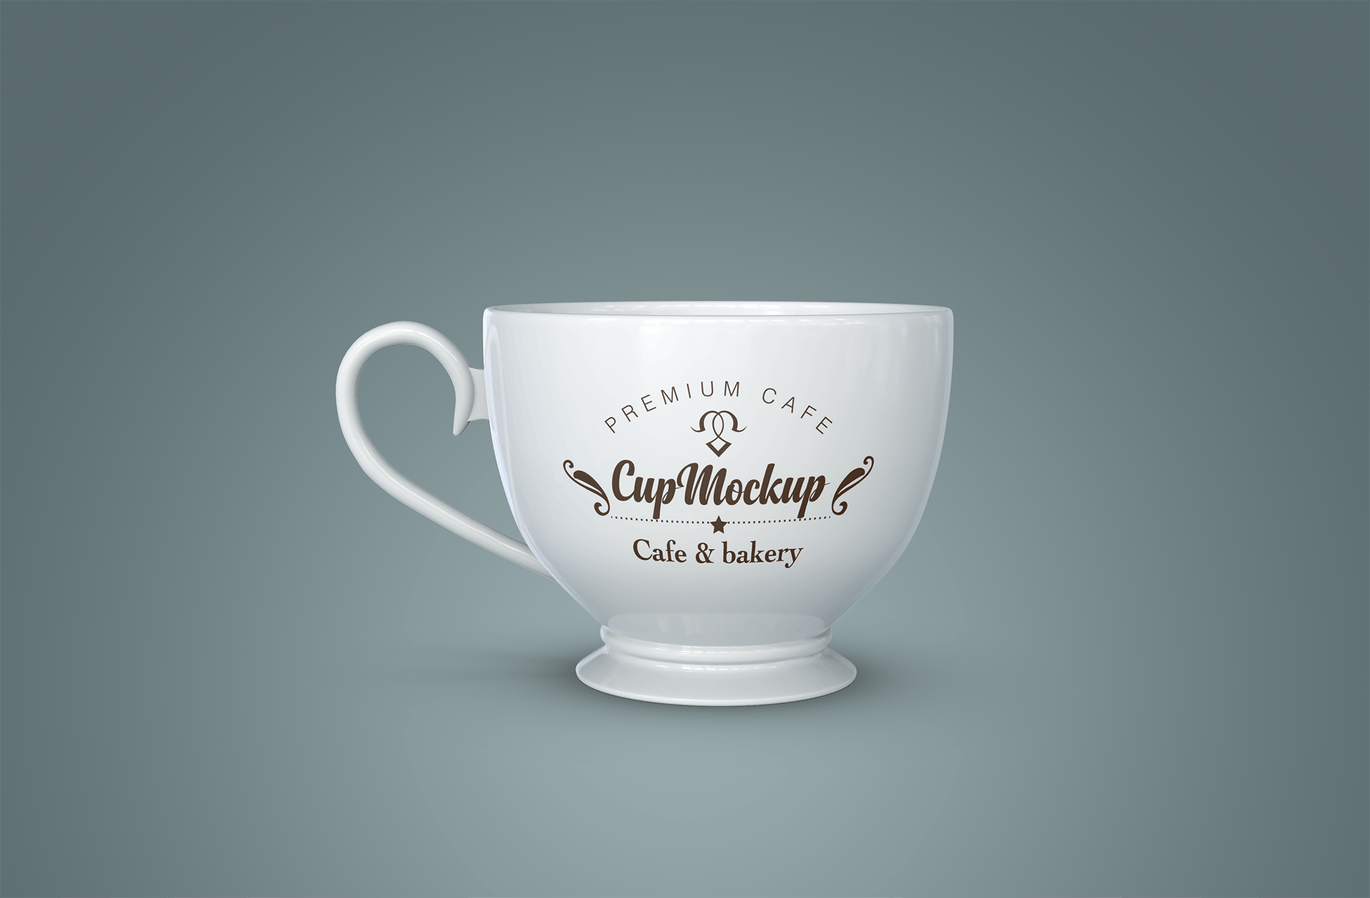 陶瓷茶杯咖啡杯外观设计样机模板v2 Cup Mockup 2.0插图(5)